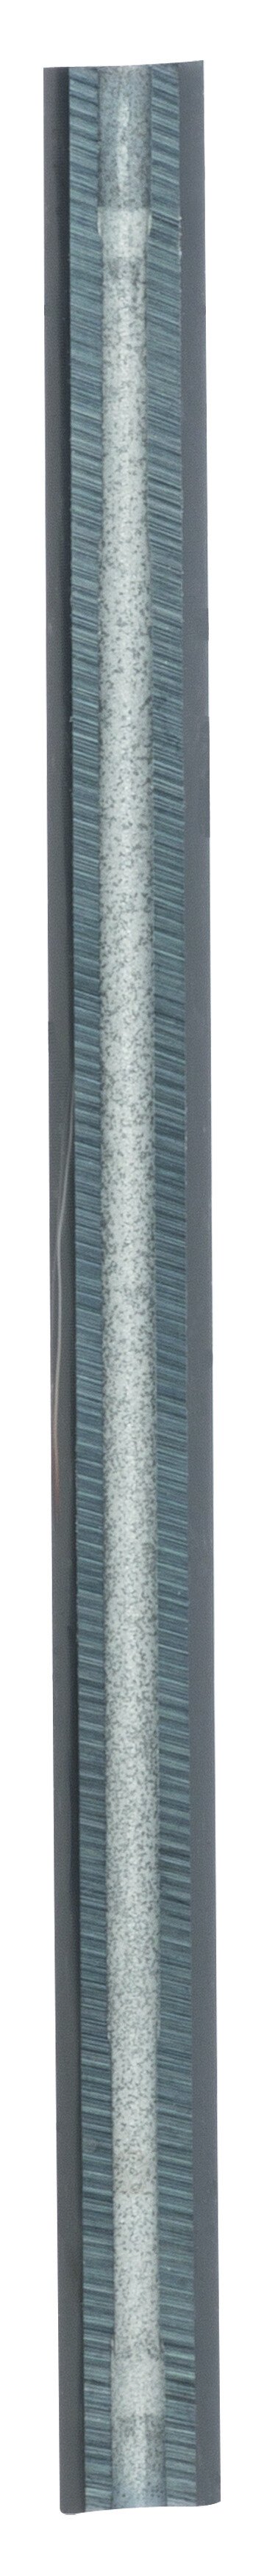 Bosch 2608635376 Reversible blades. Tungsten Carbide Woodrazor blade - Ultra Sharp (5 Packs of 1)